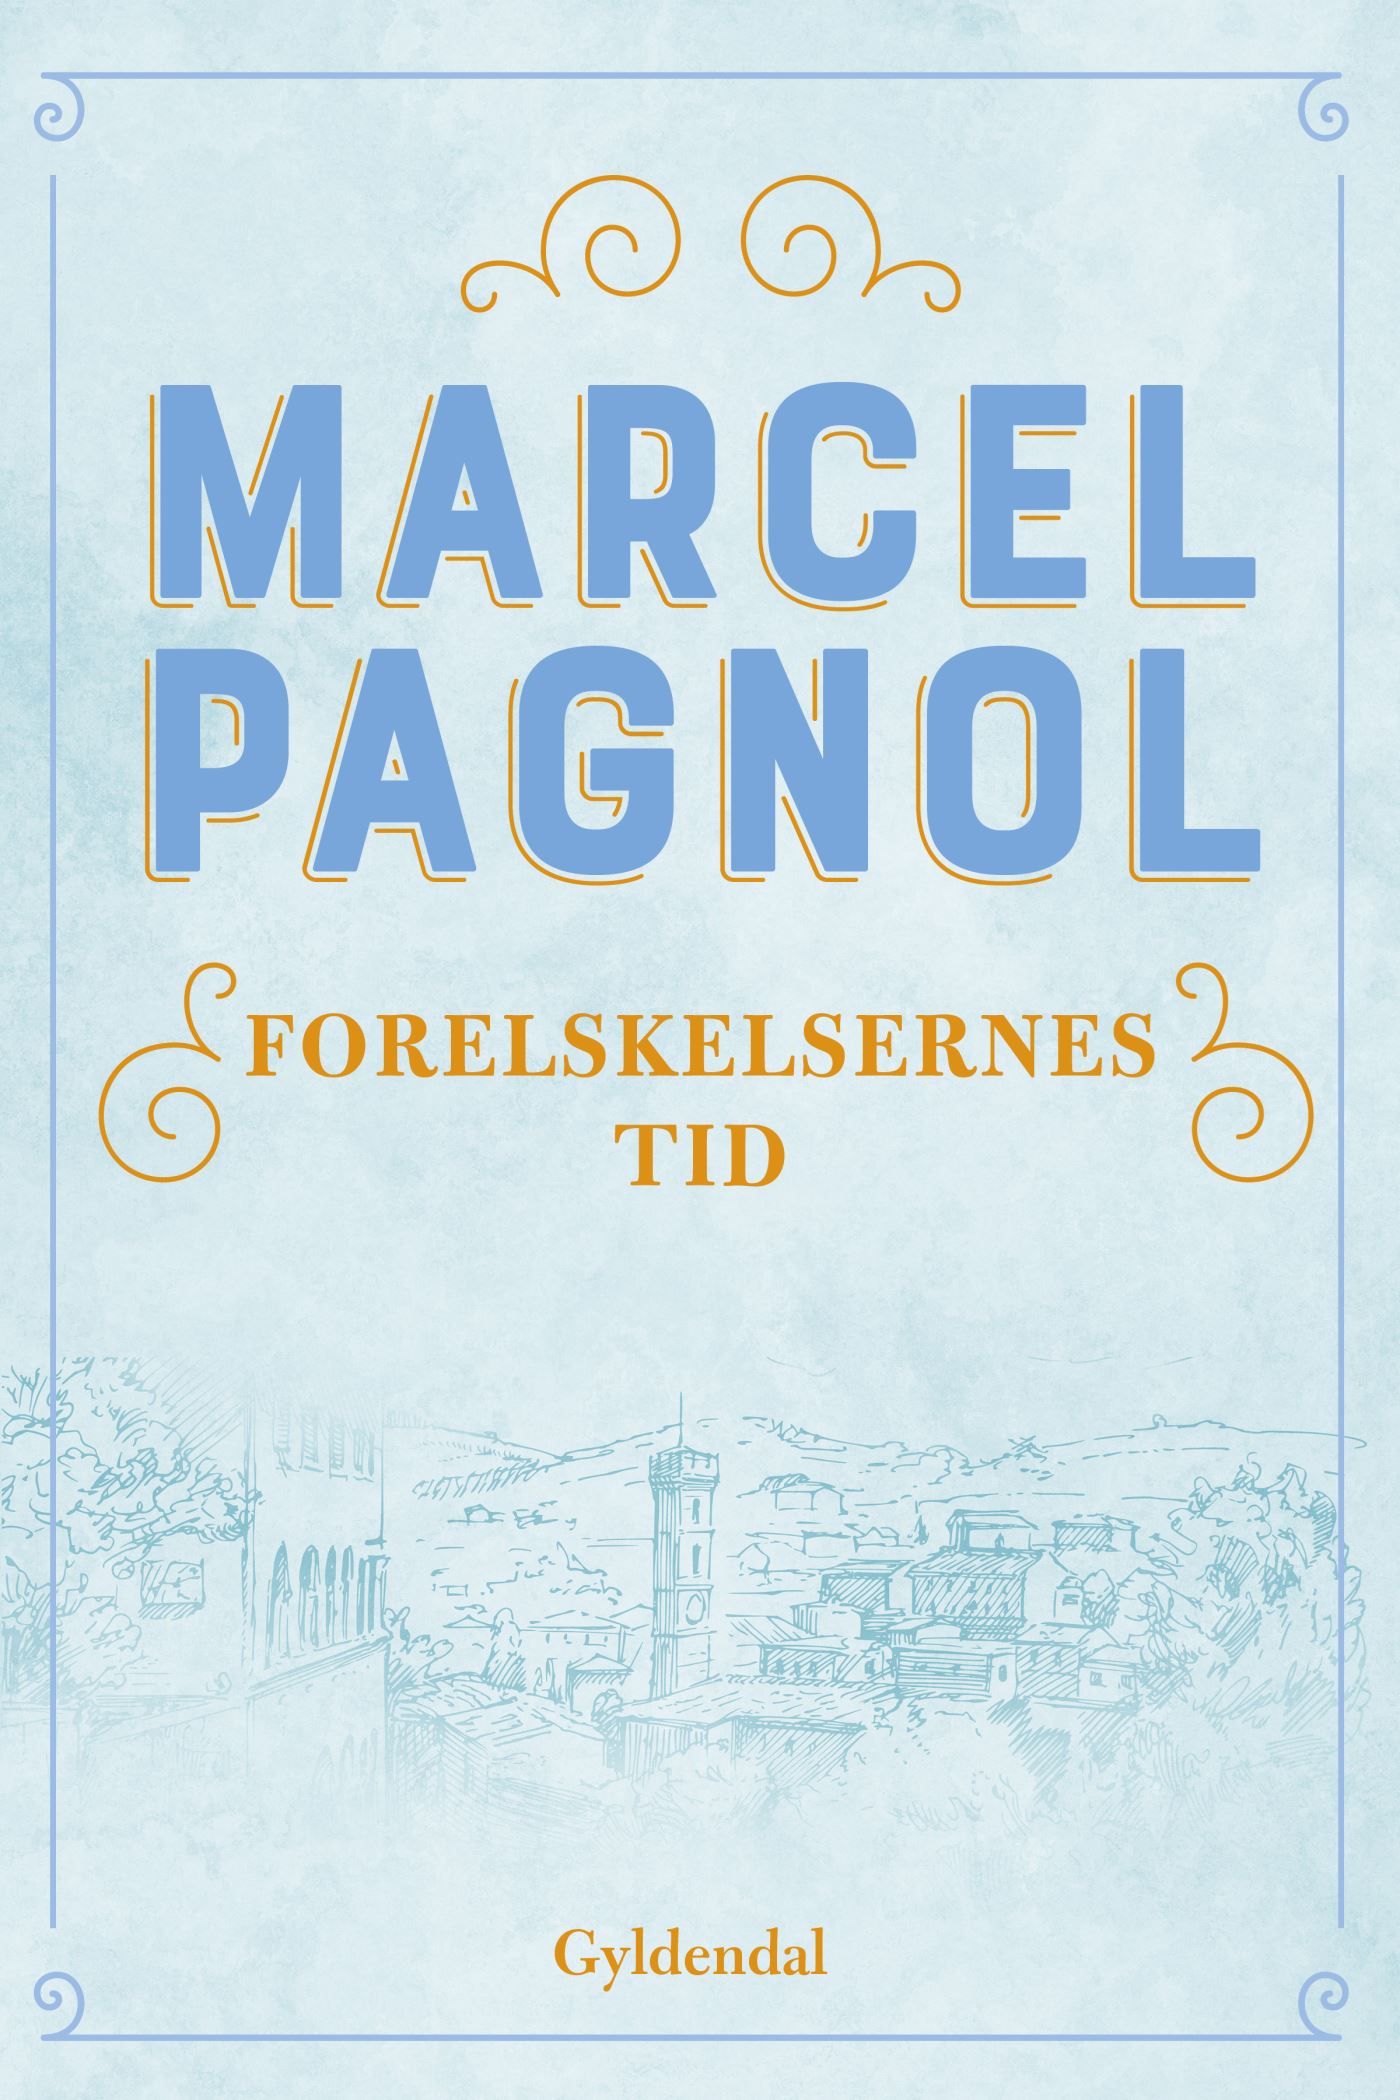 Forelskelsernes tid, e-bok av Marcel Pagnol